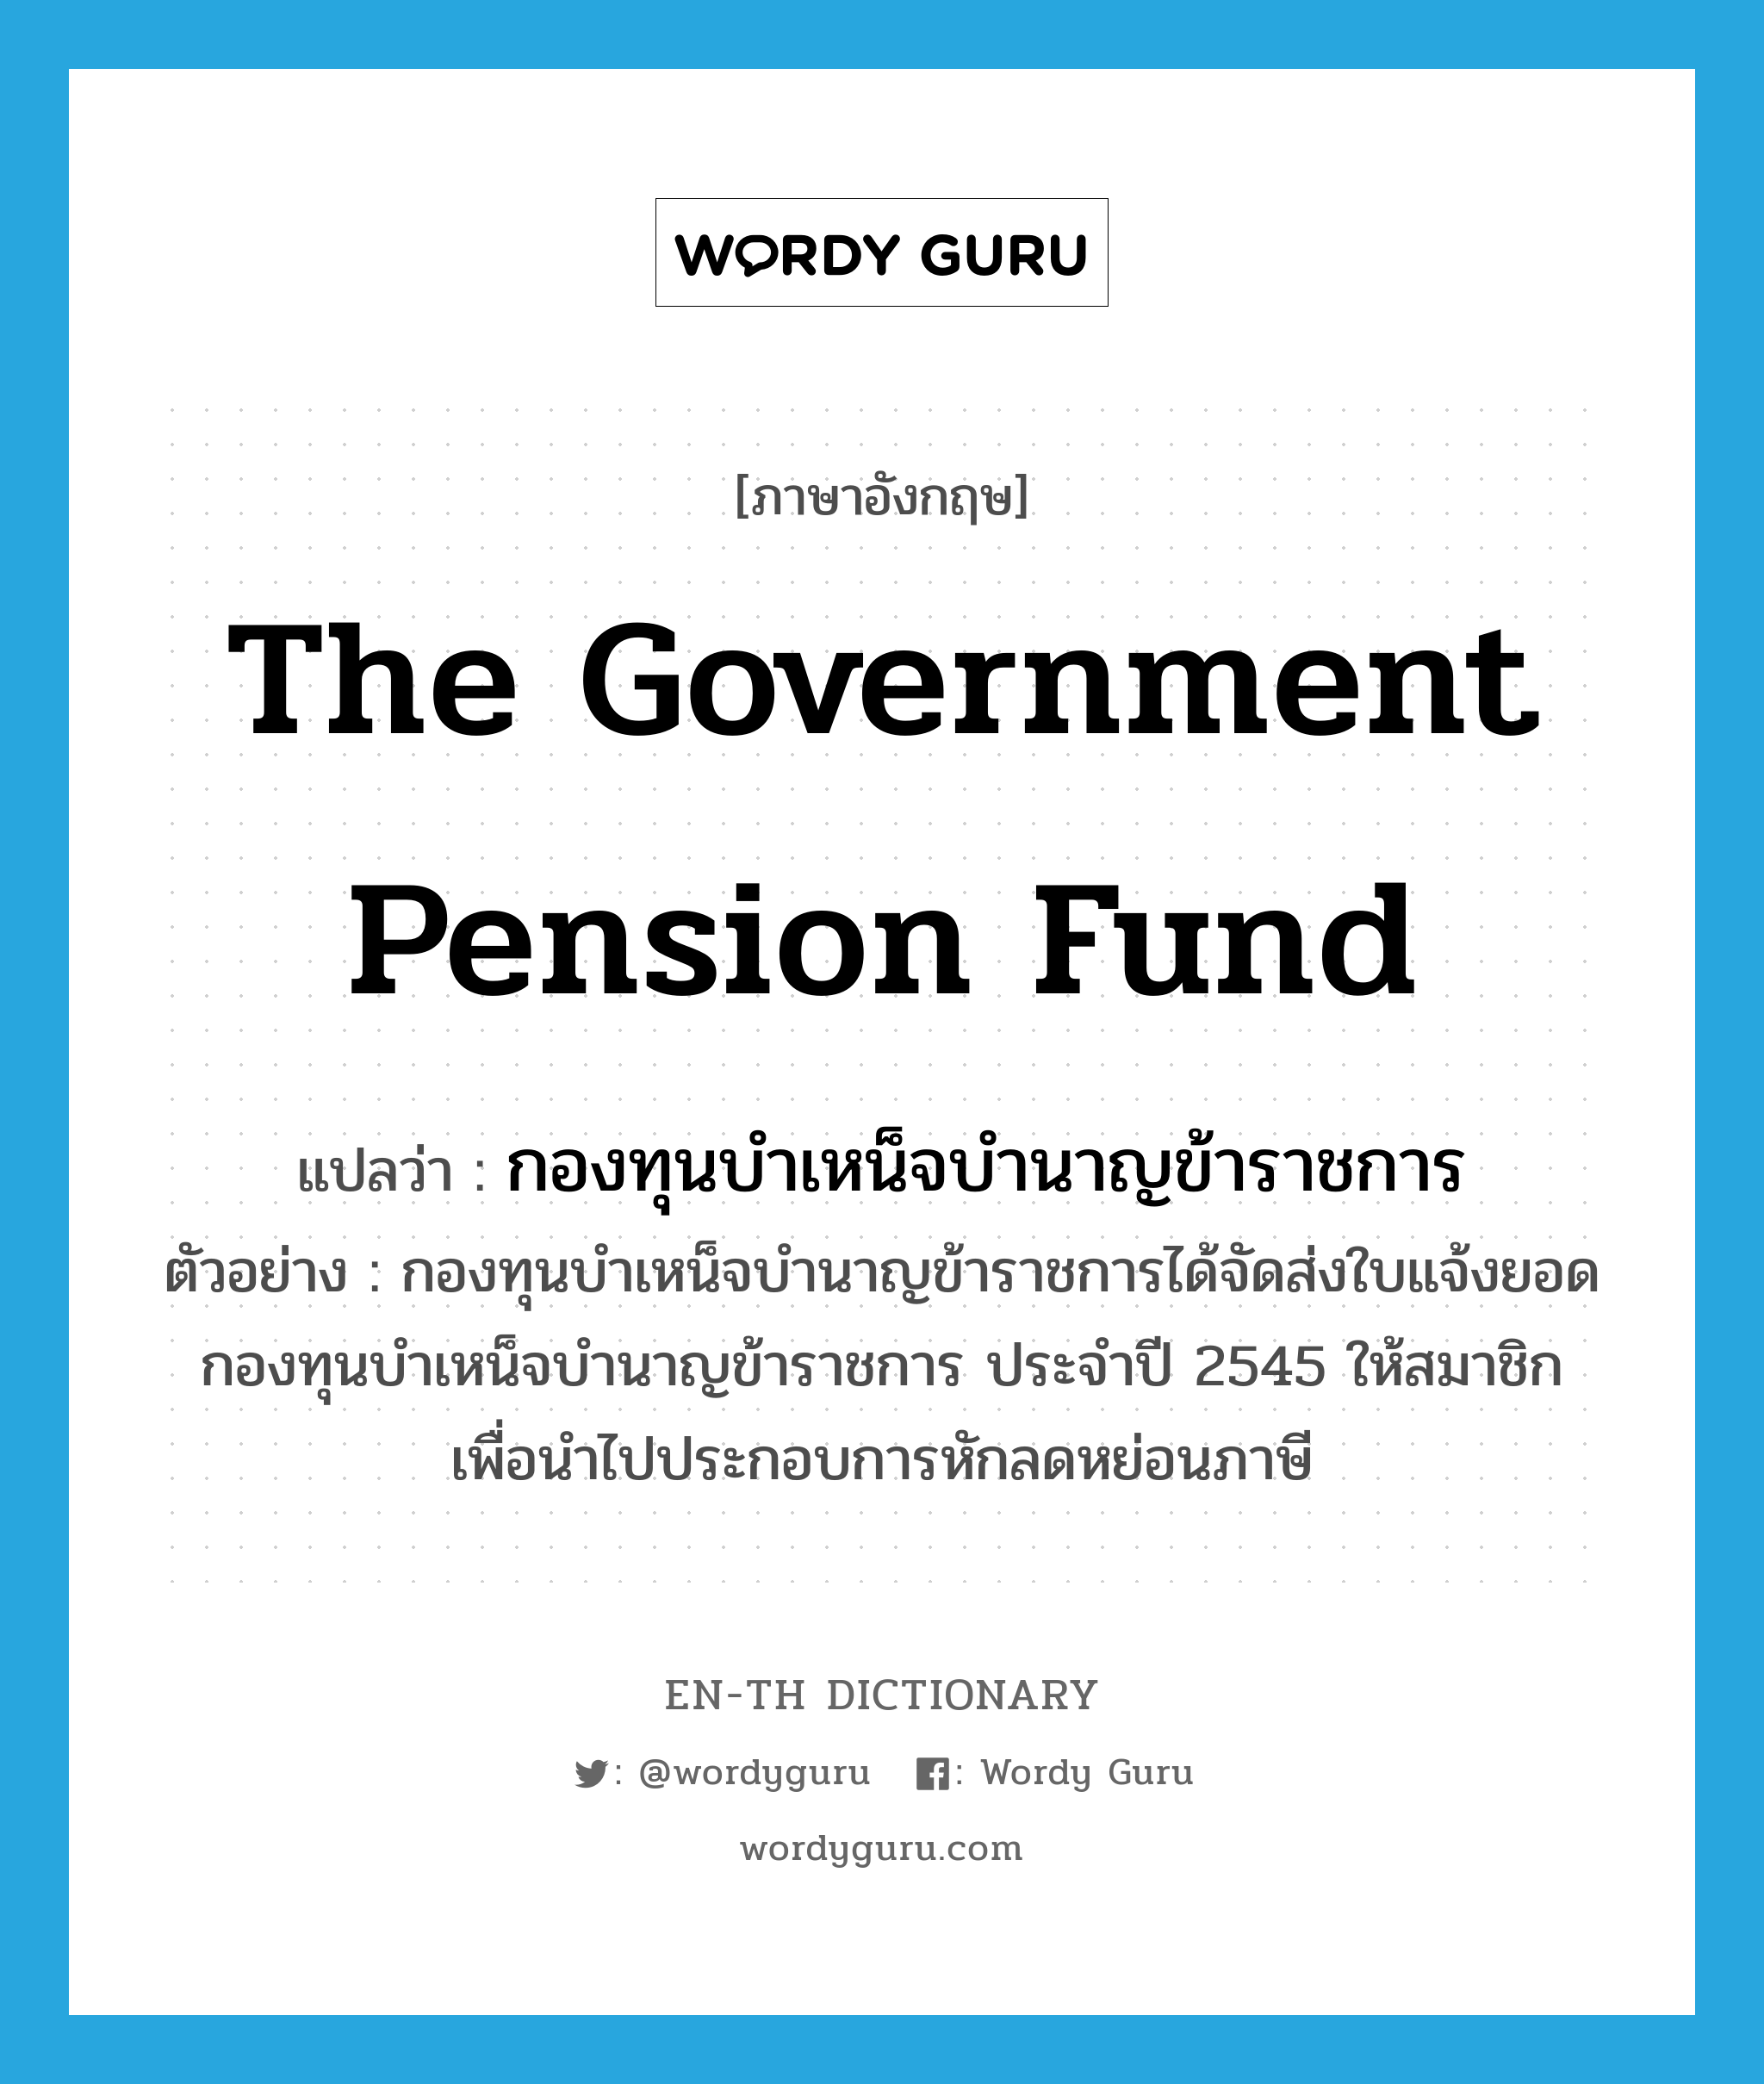 The Government Pension Fund แปลว่า?, คำศัพท์ภาษาอังกฤษ The Government Pension Fund แปลว่า กองทุนบำเหน็จบำนาญข้าราชการ ประเภท N ตัวอย่าง กองทุนบำเหน็จบำนาญข้าราชการได้จัดส่งใบแจ้งยอดกองทุนบำเหน็จบำนาญข้าราชการ ประจำปี 2545 ให้สมาชิก เพื่อนำไปประกอบการหักลดหย่อนภาษี หมวด N